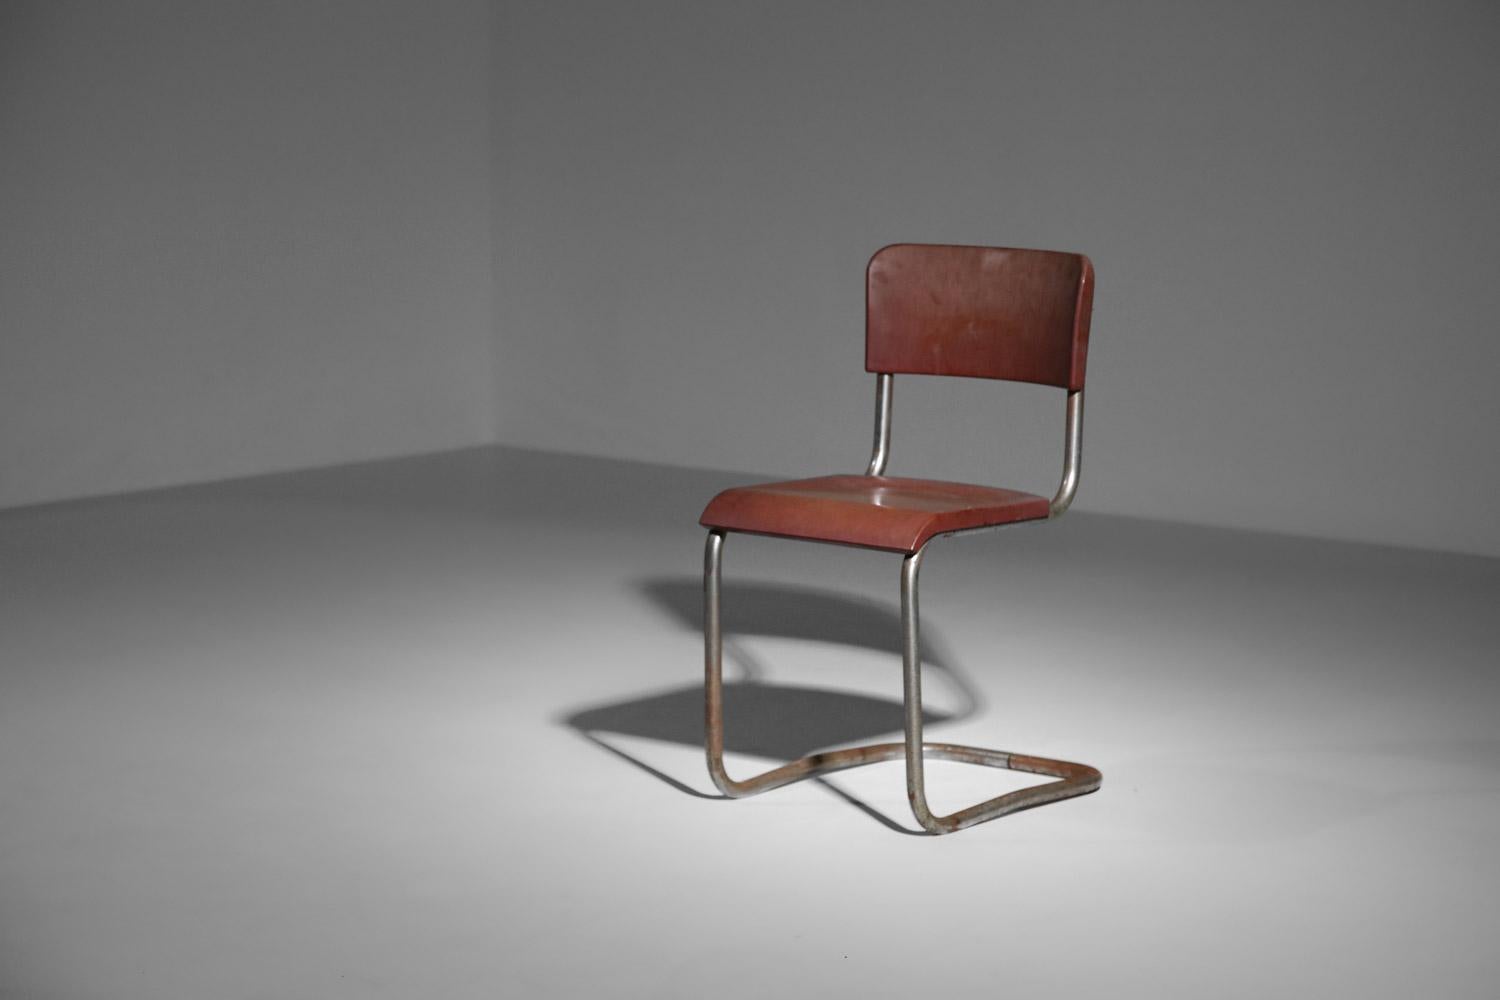 chrome tube bakelite chair in style of Emile Guillot art deco modernist breuer For Sale 3